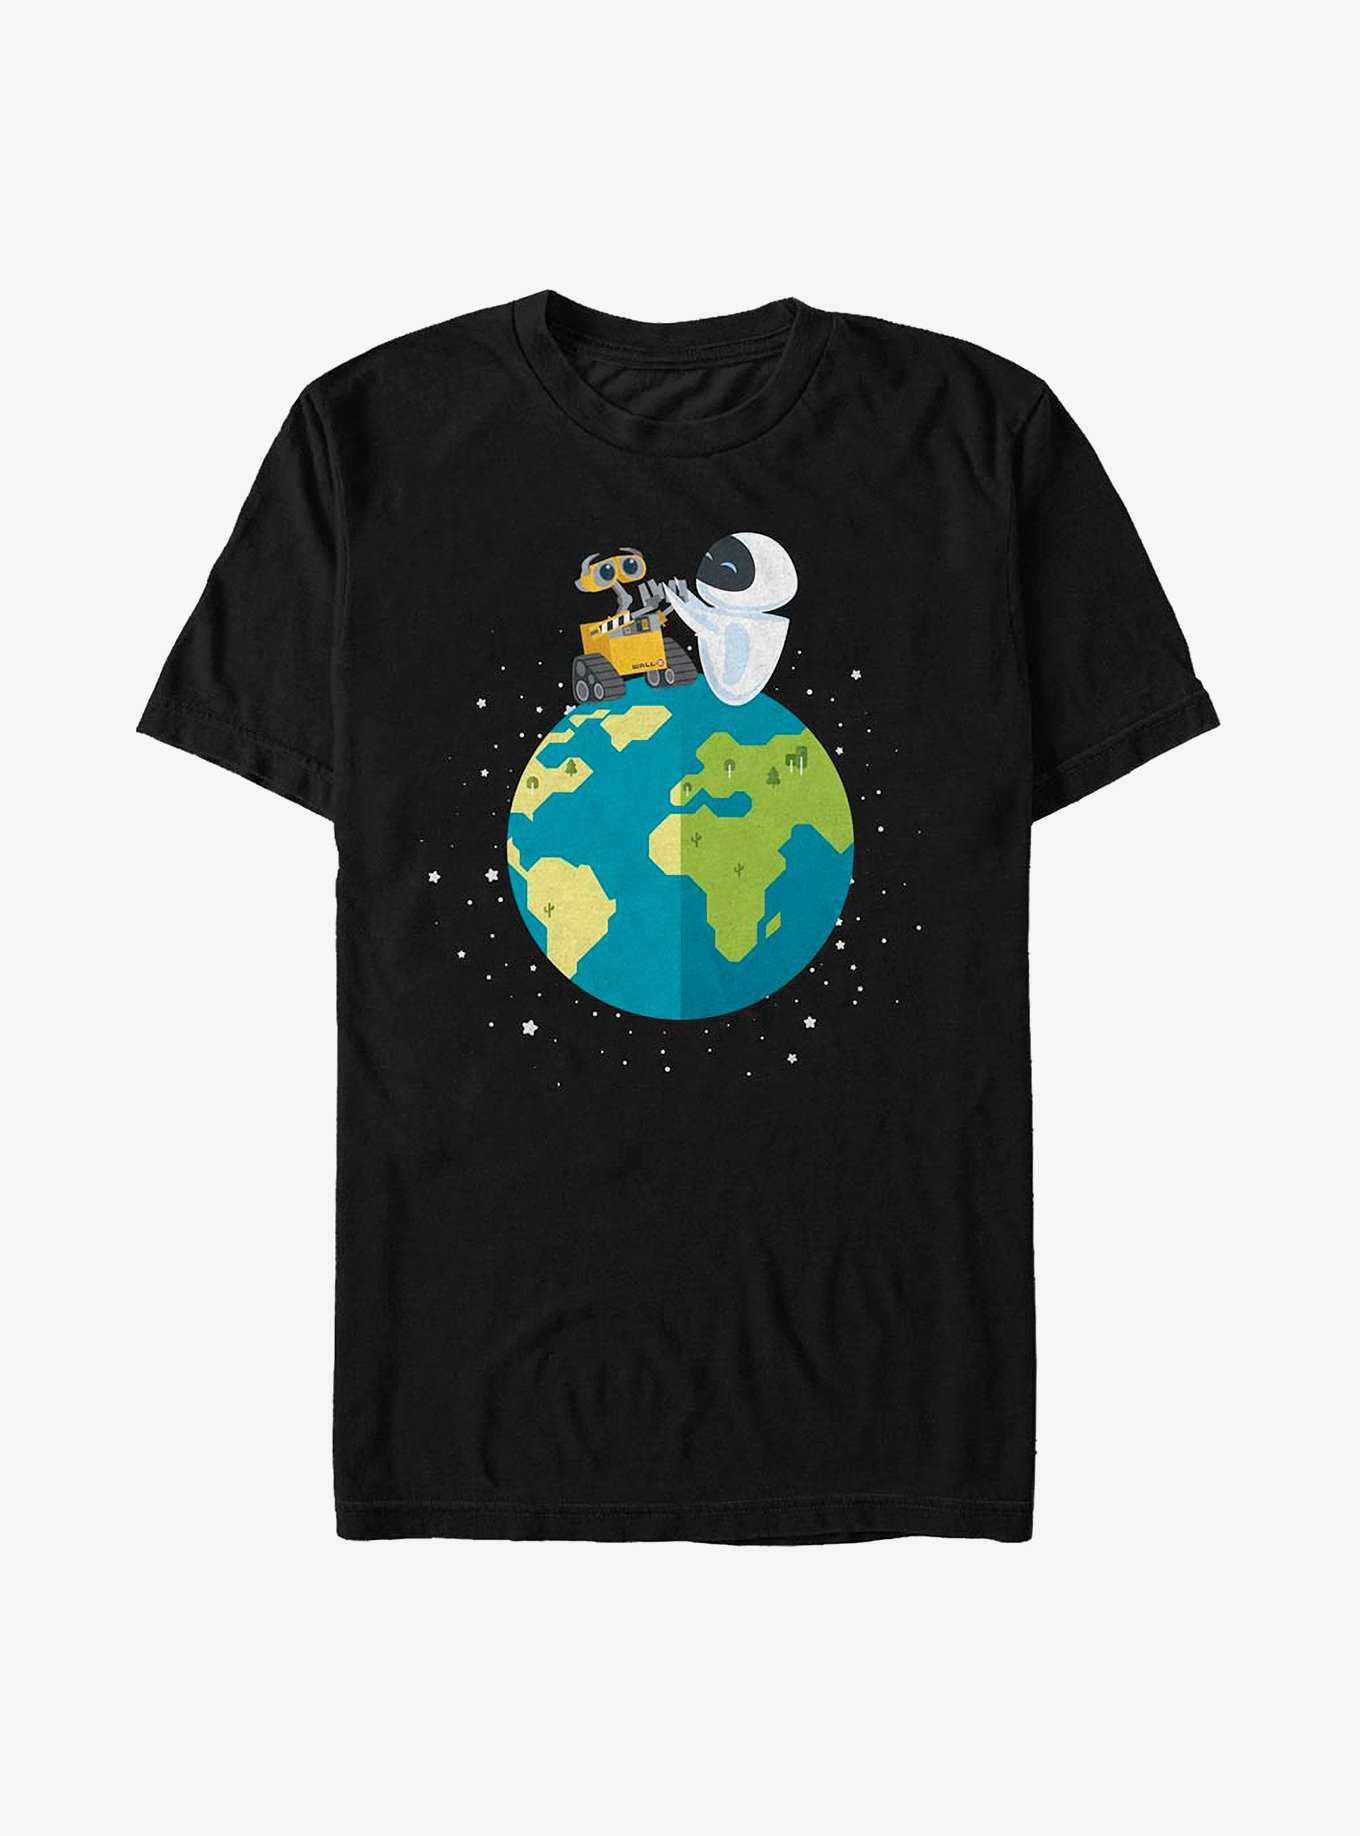 Disney Pixar WALL-E World Peace T-Shirt, , hi-res